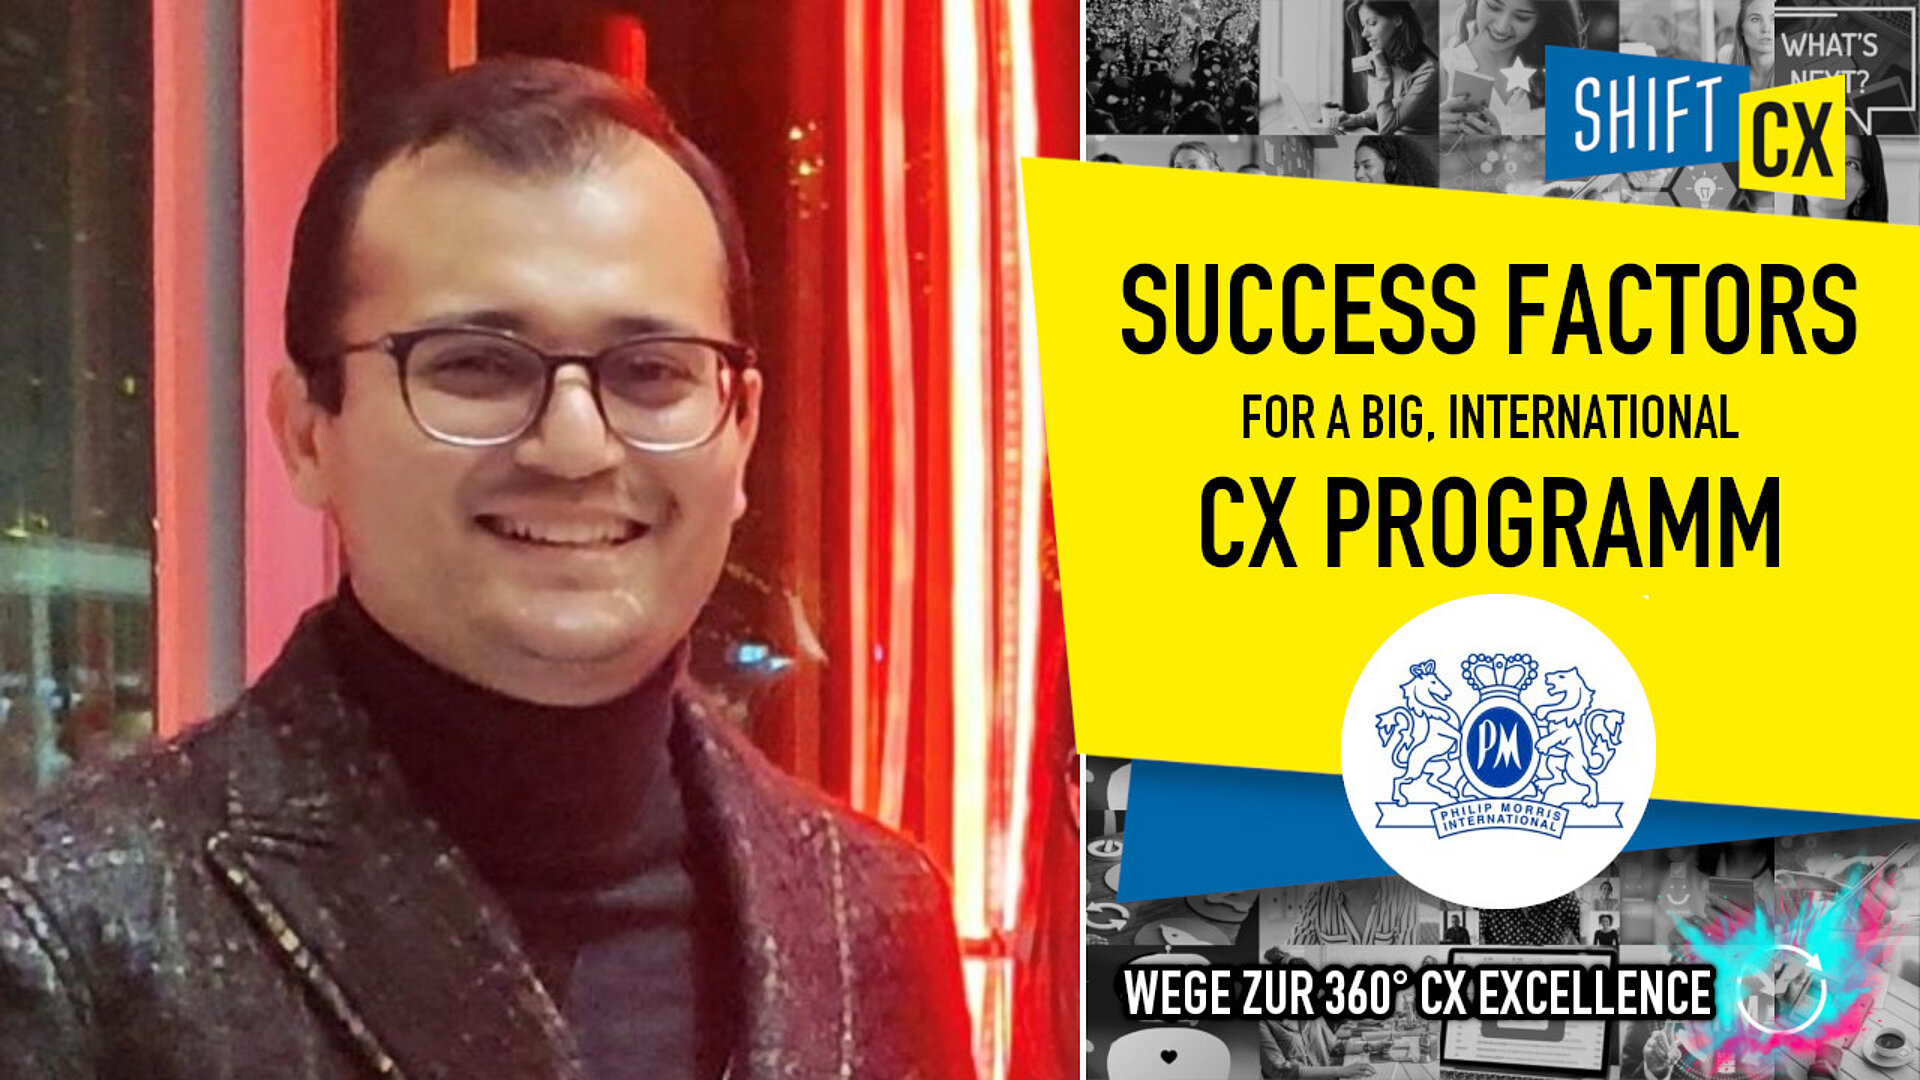 Success factors for a big, international CX programm